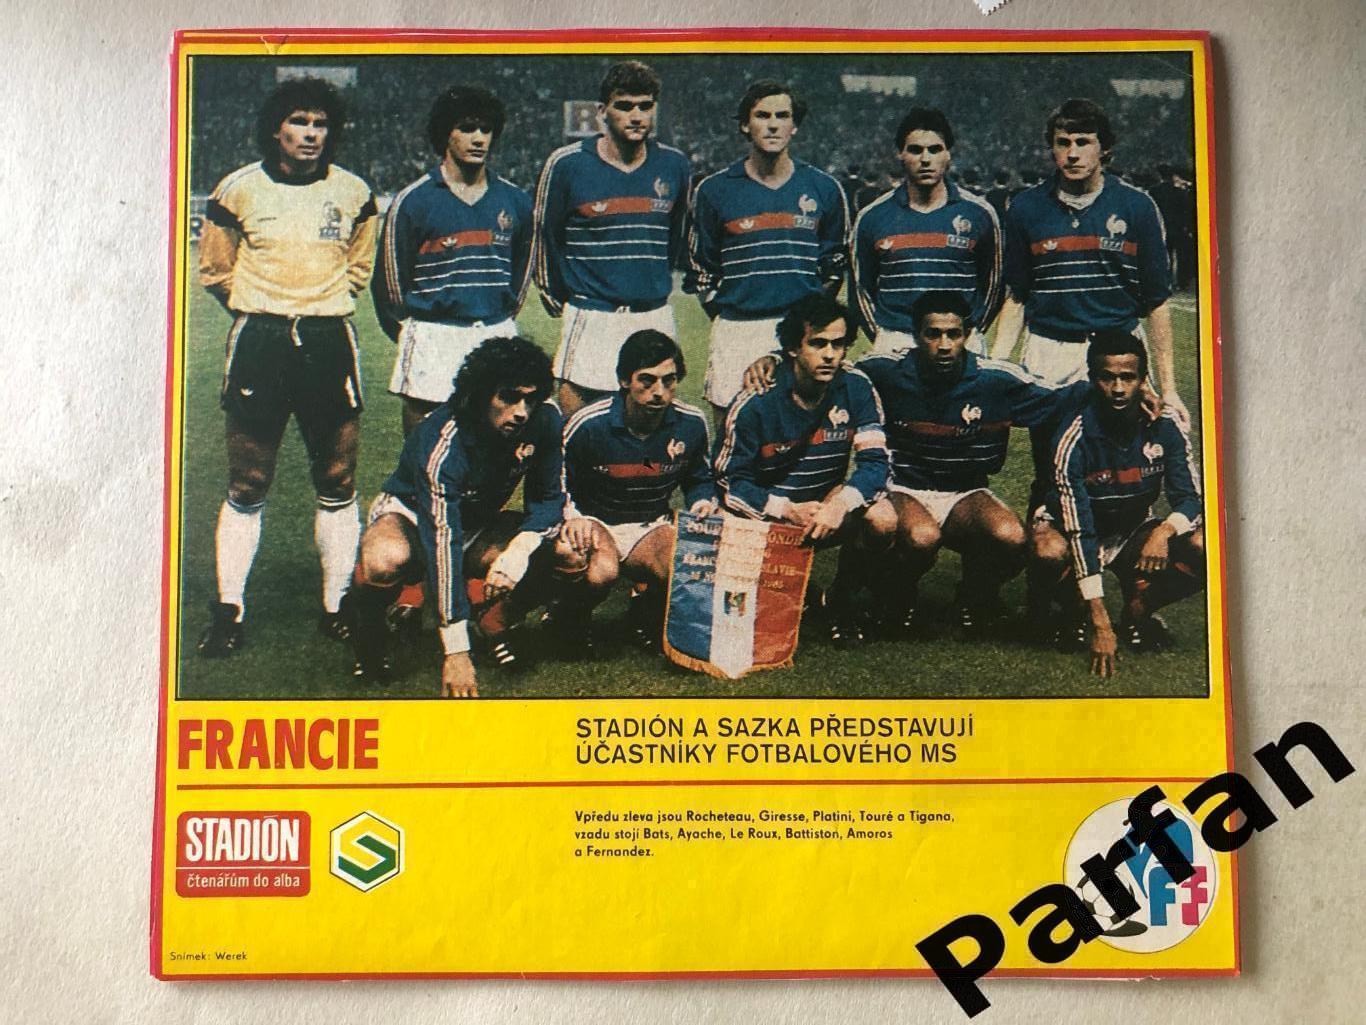 Stadion Постер Франція 1986